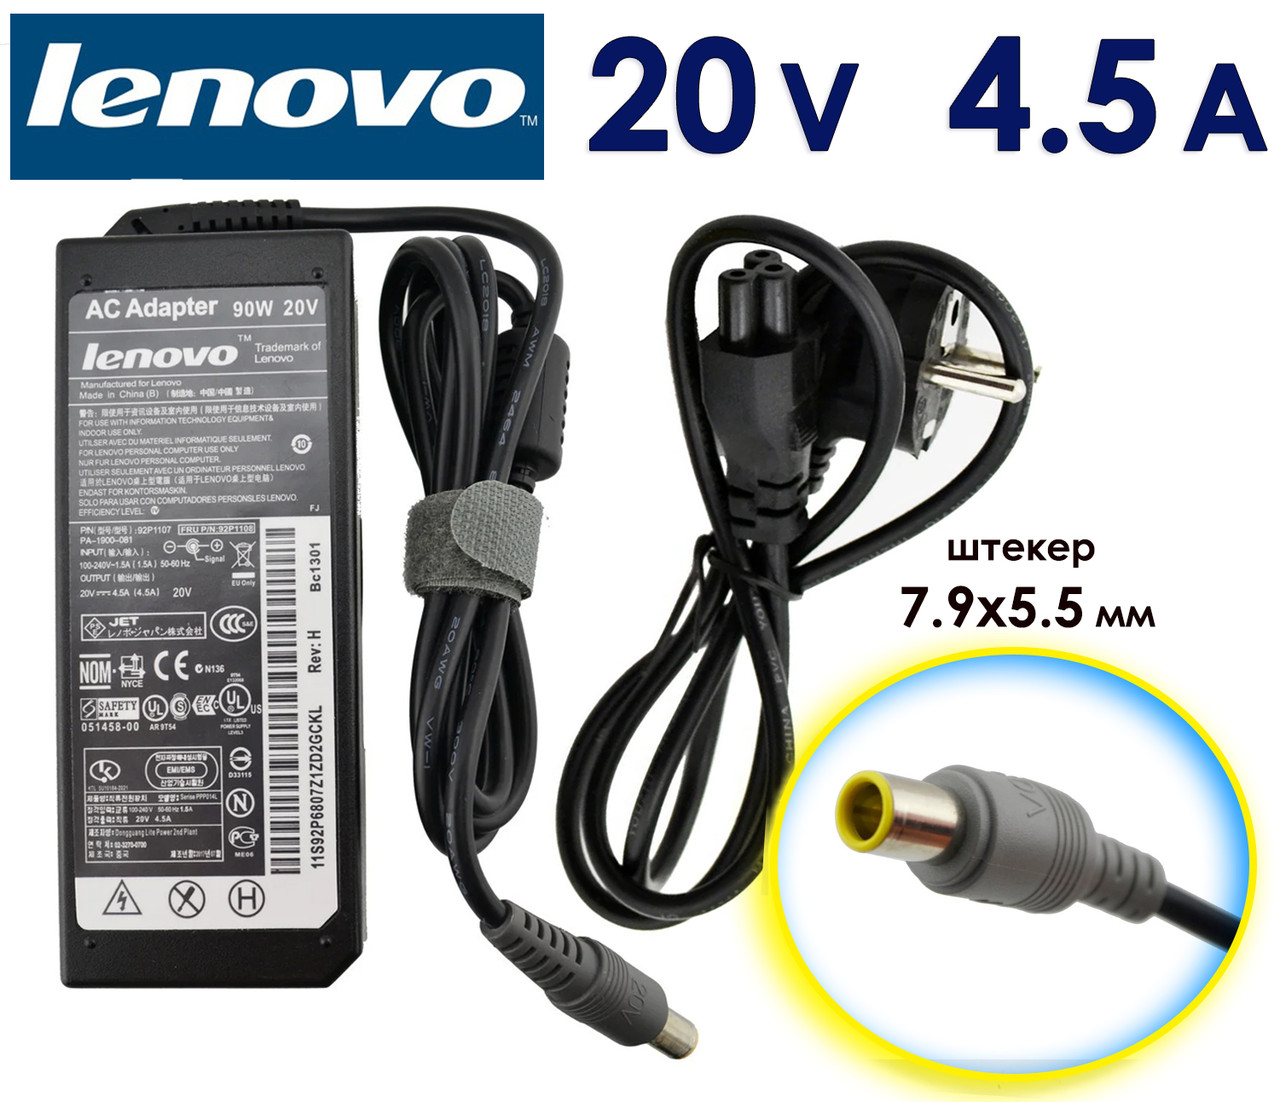 Зарядний пристрій до Lenovo Thinkpad T400 20V 4.5A 90W 7.9x5.5 (8.0 pin) для ноутбука, зарядне, блок живлення